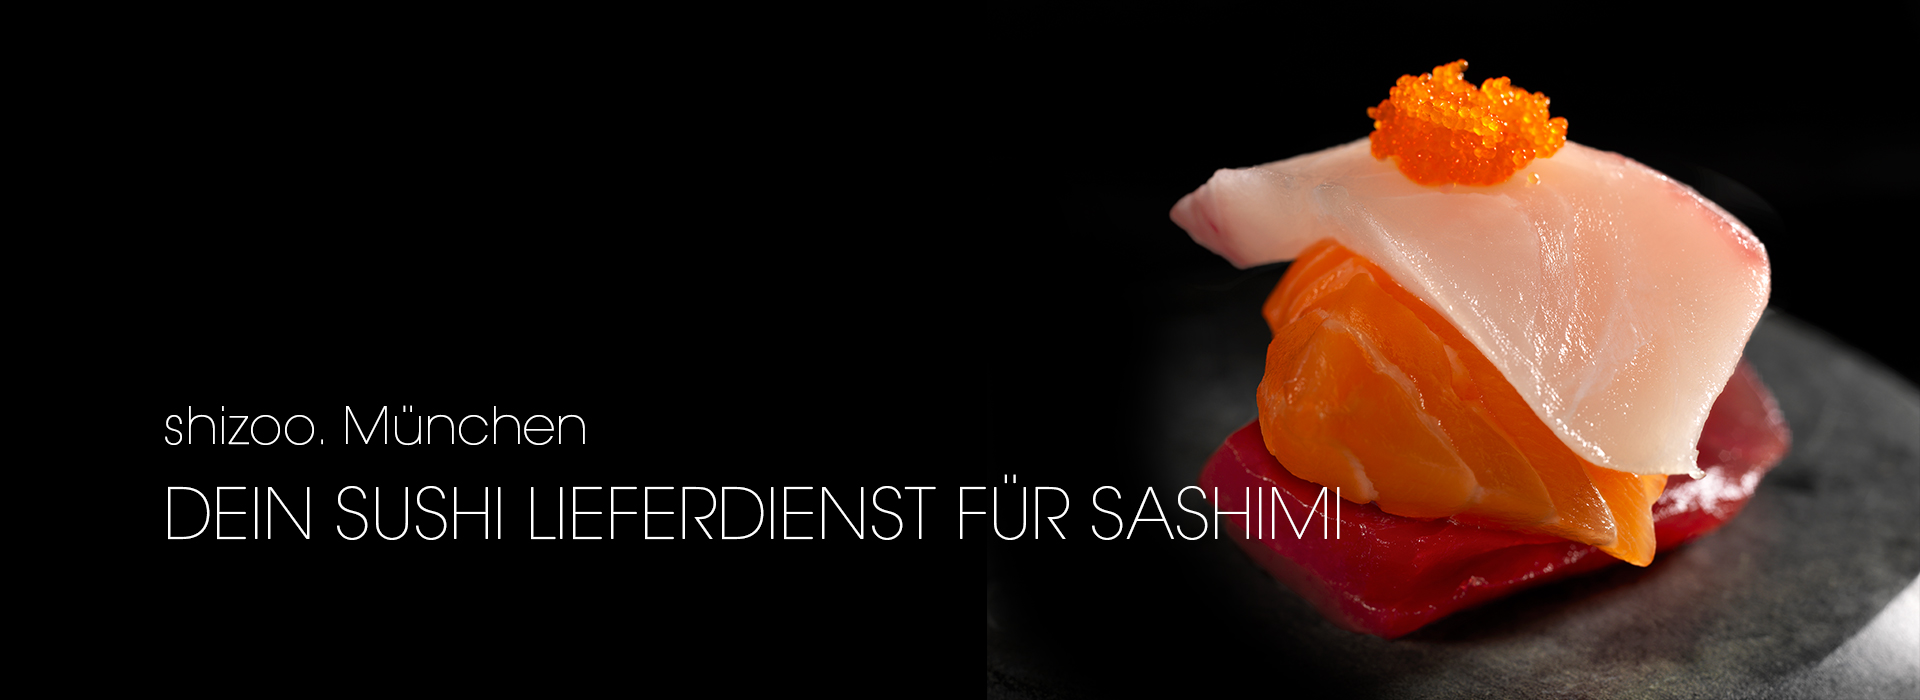 Sashimi bestellen München von shizoo. Sushi Lieferservice